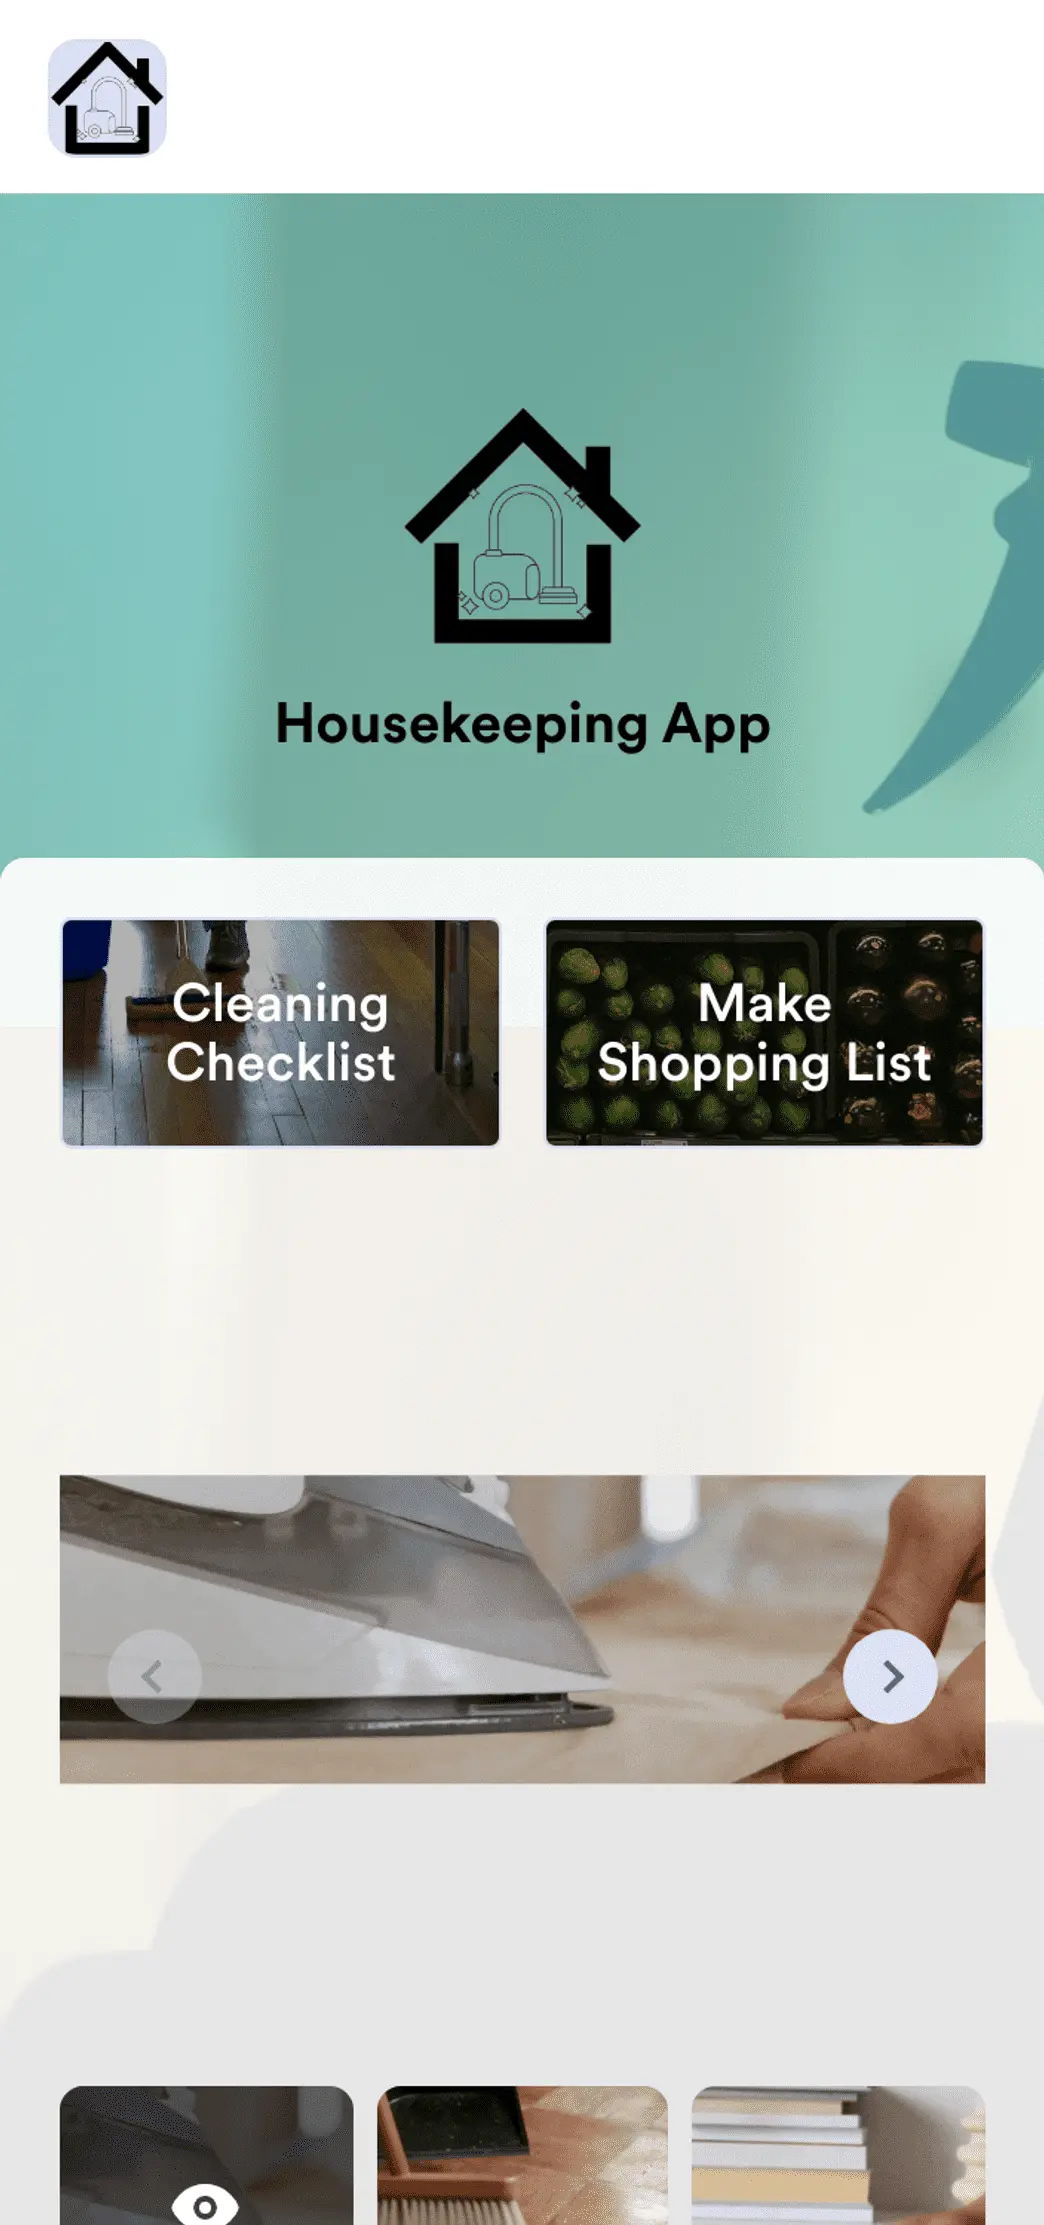 Housekeeping App